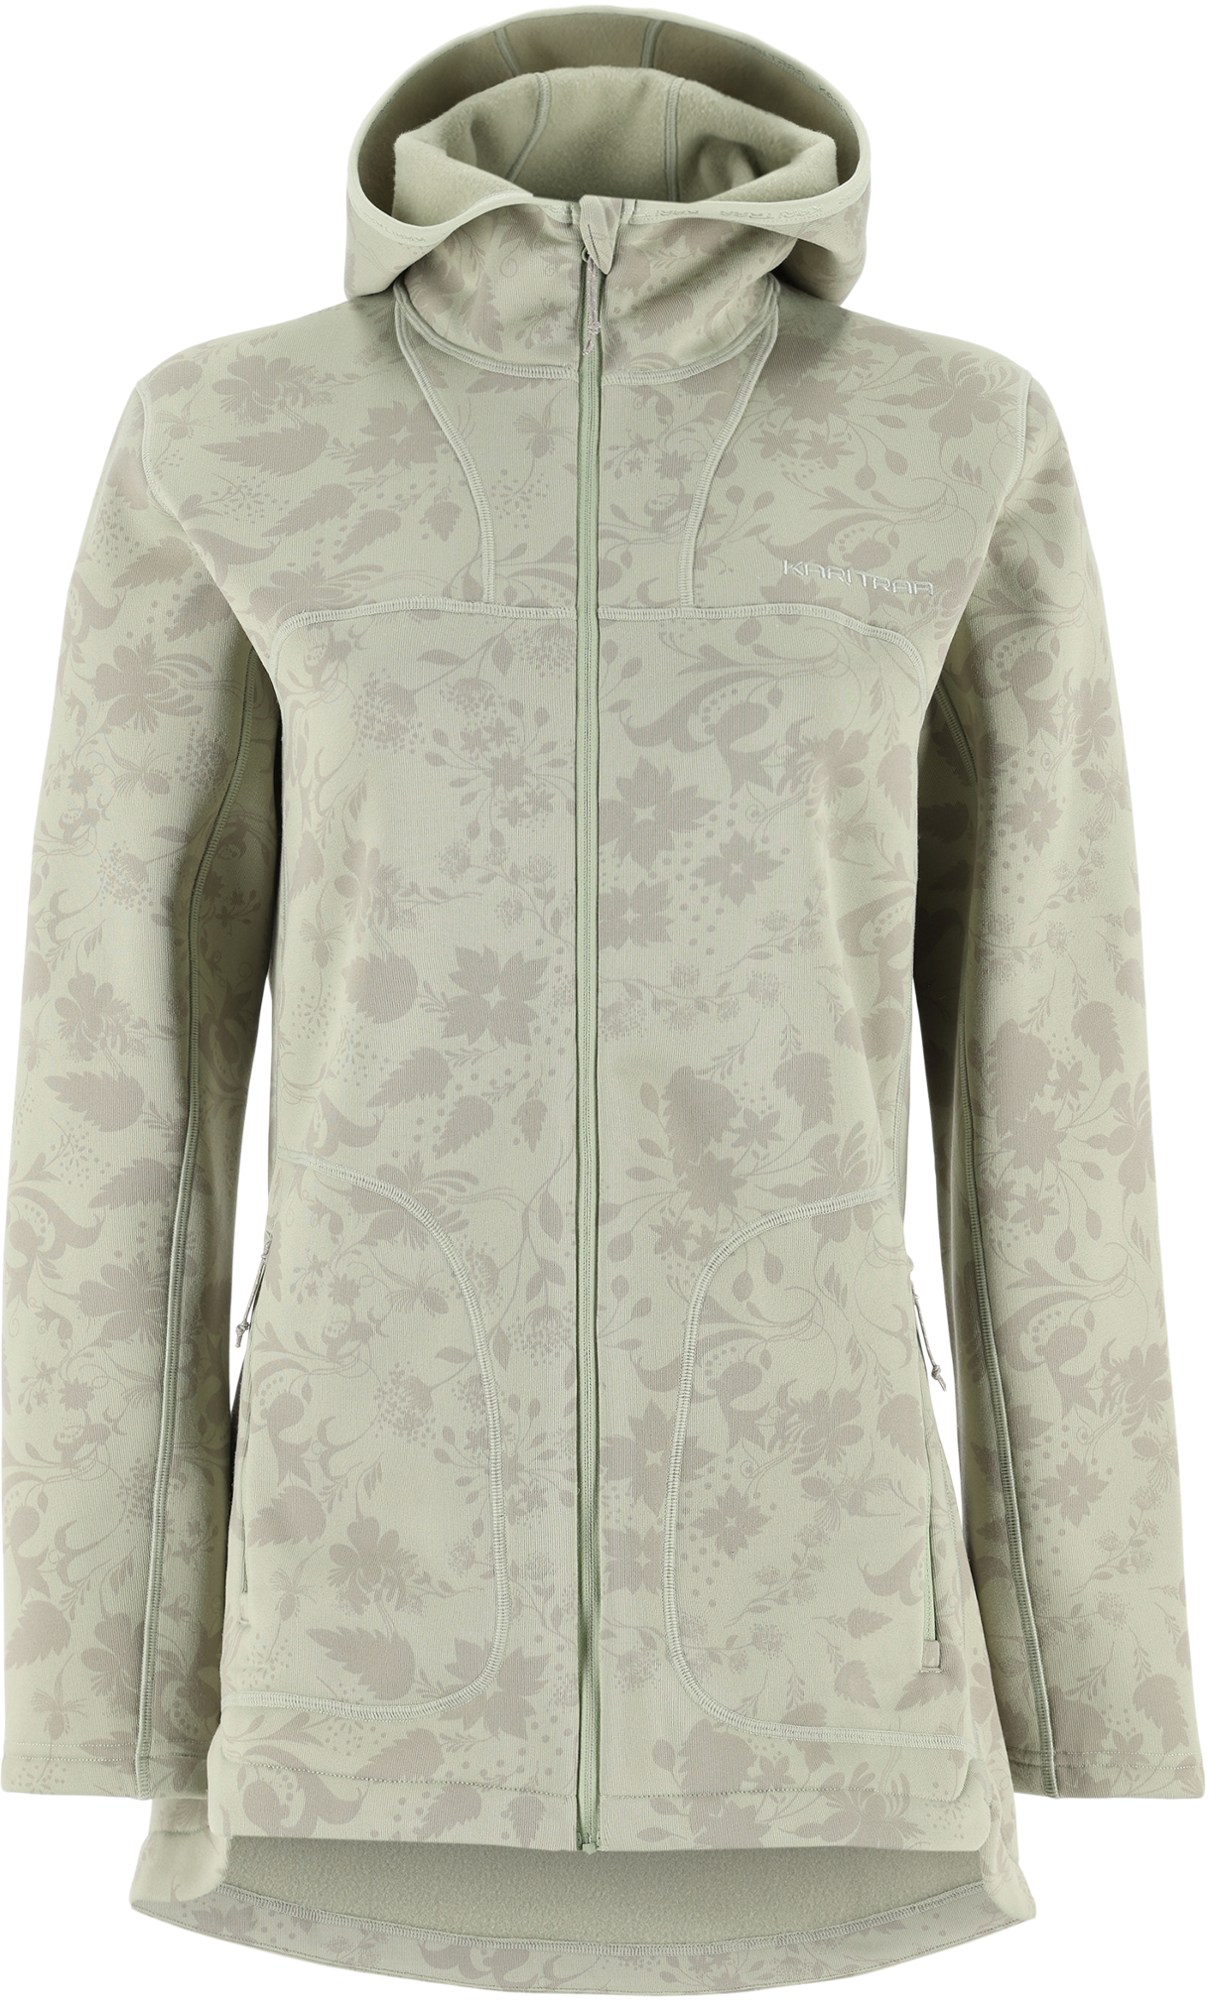 Флисовая куртка Sanne Outdoor - женская Kari Traa, зеленый